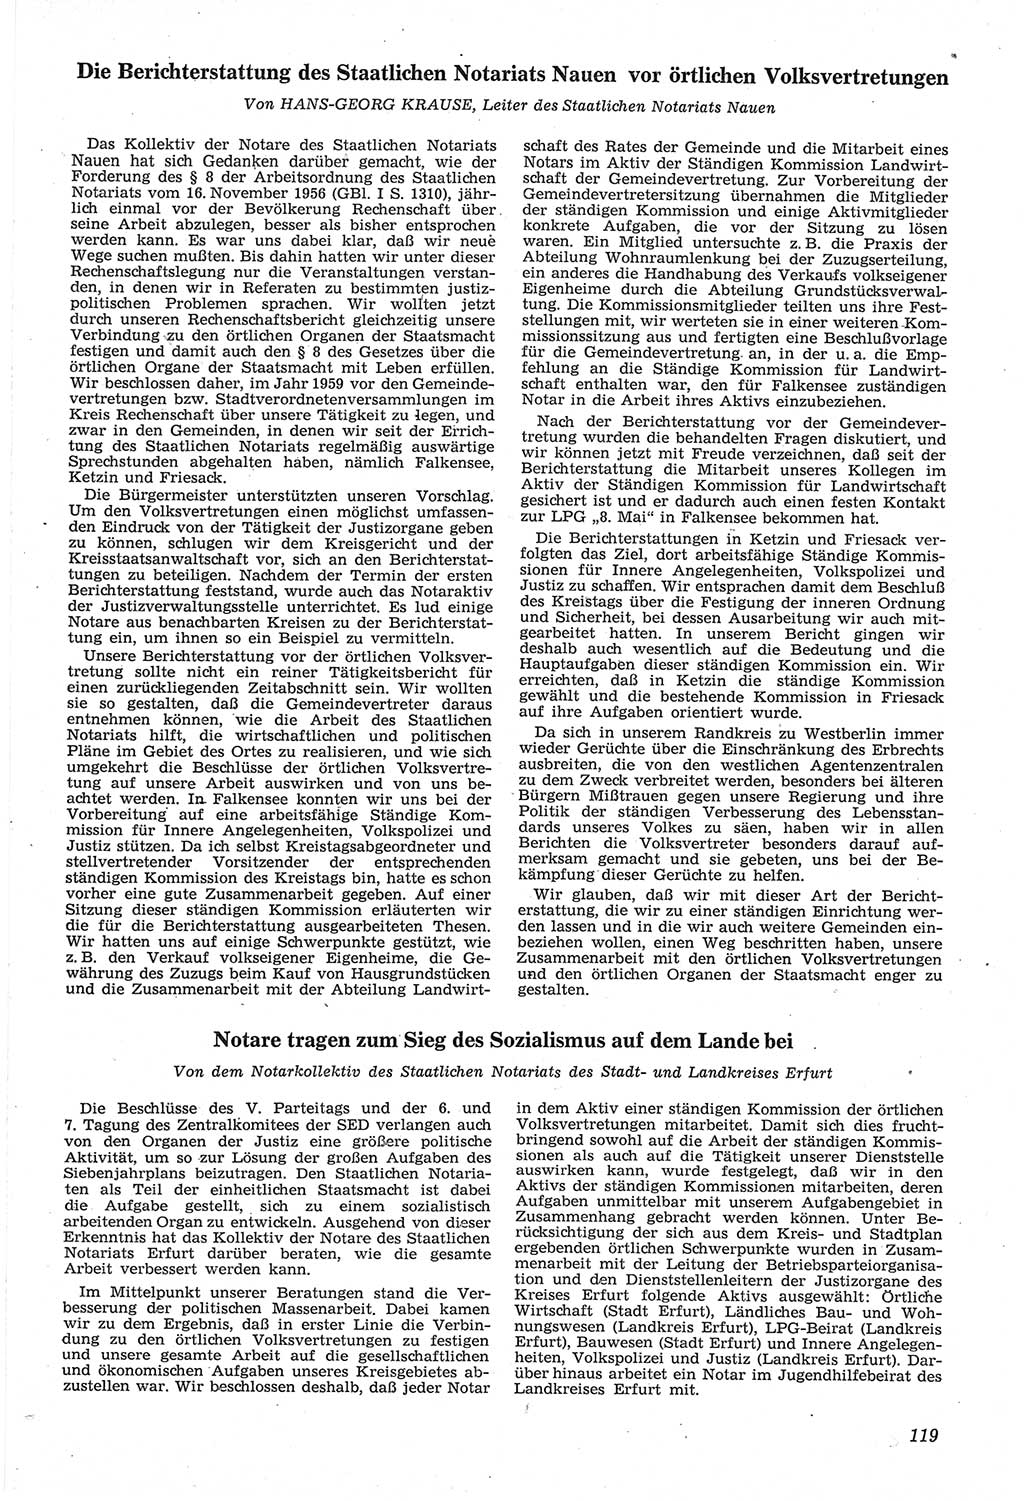 Neue Justiz (NJ), Zeitschrift für Recht und Rechtswissenschaft [Deutsche Demokratische Republik (DDR)], 14. Jahrgang 1960, Seite 119 (NJ DDR 1960, S. 119)